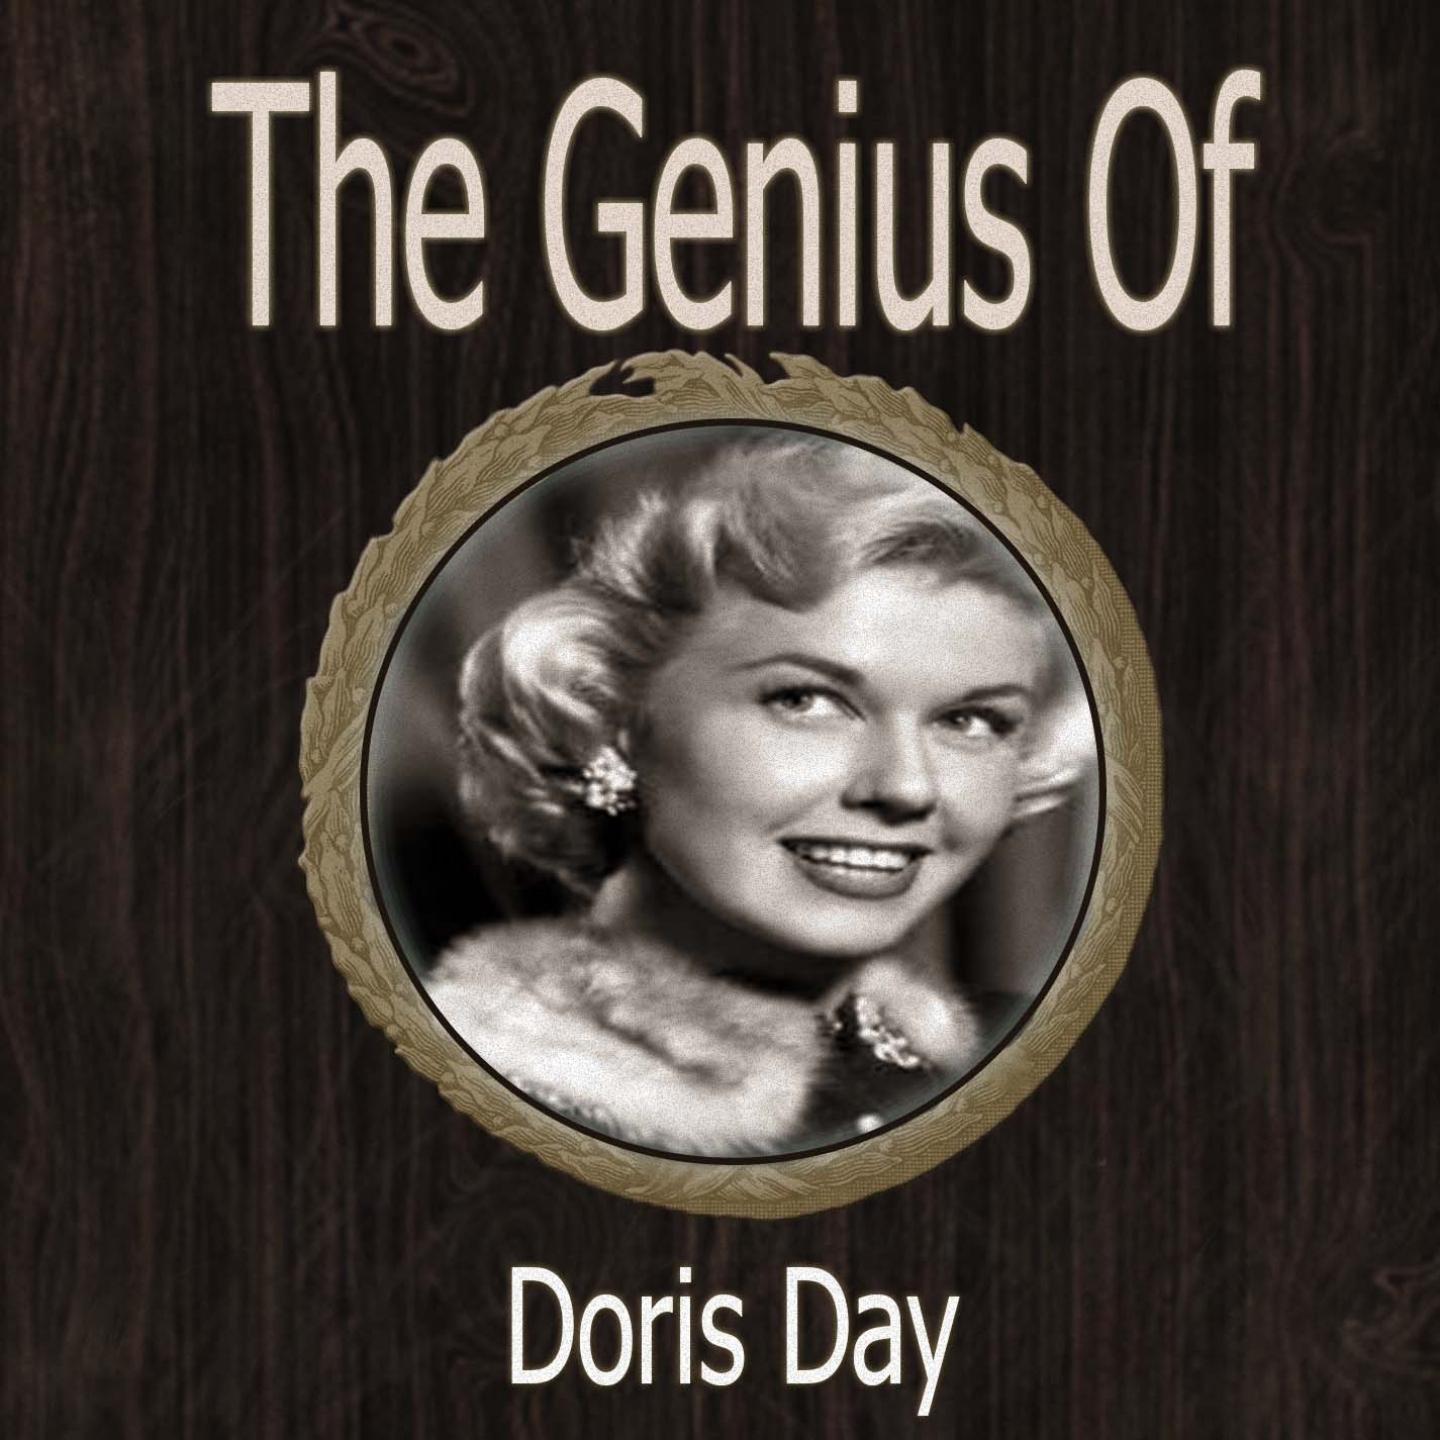 The Genius of Doris Day